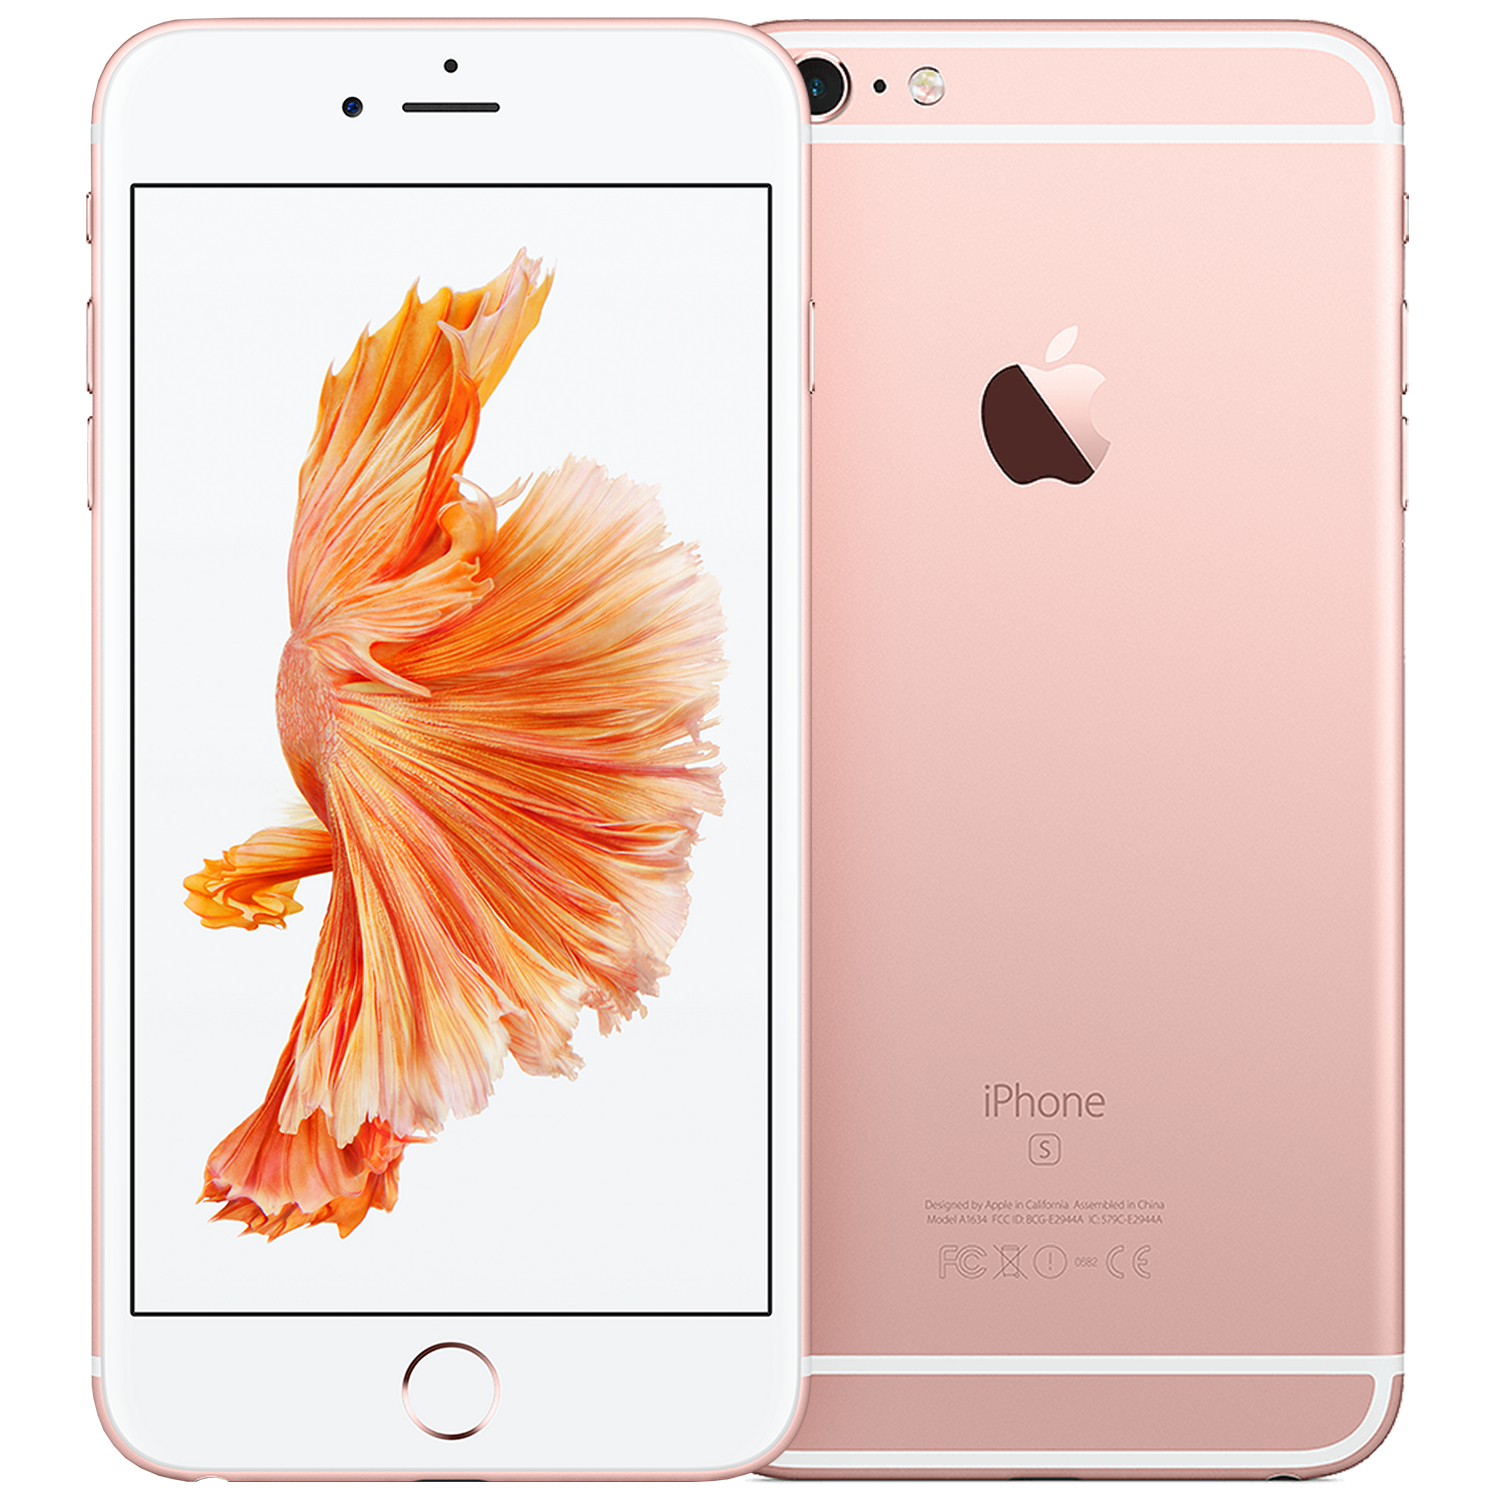 onderwijs walvis weduwe iPhone 6s Plus 64GB rosegoud kopen? - 2 jaar garantie! | Fixje